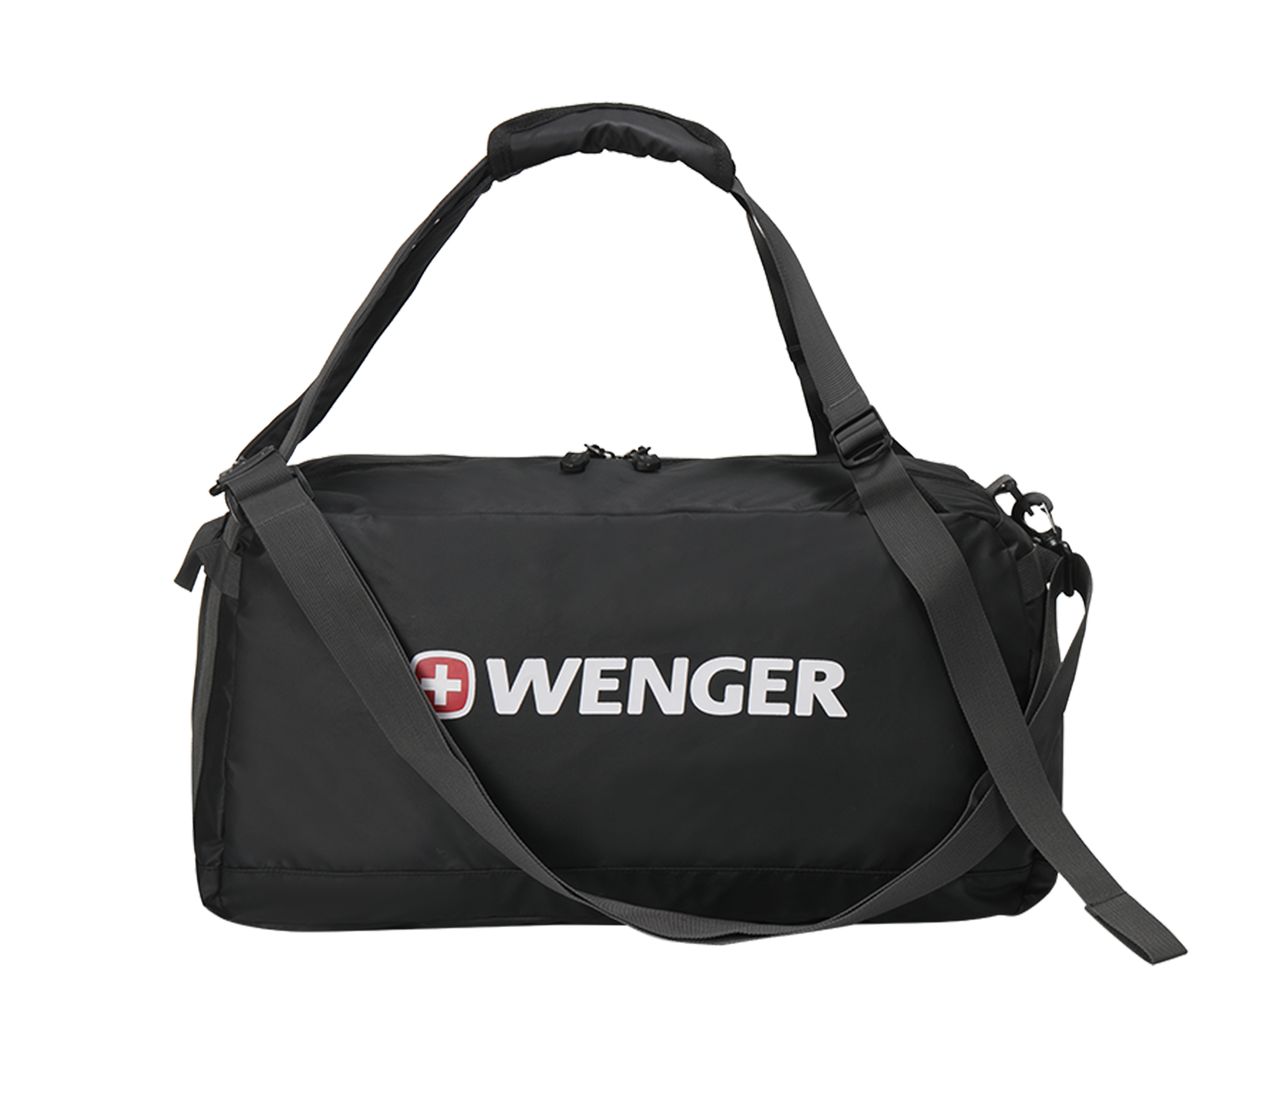 Wenger 旅行袋为黑色